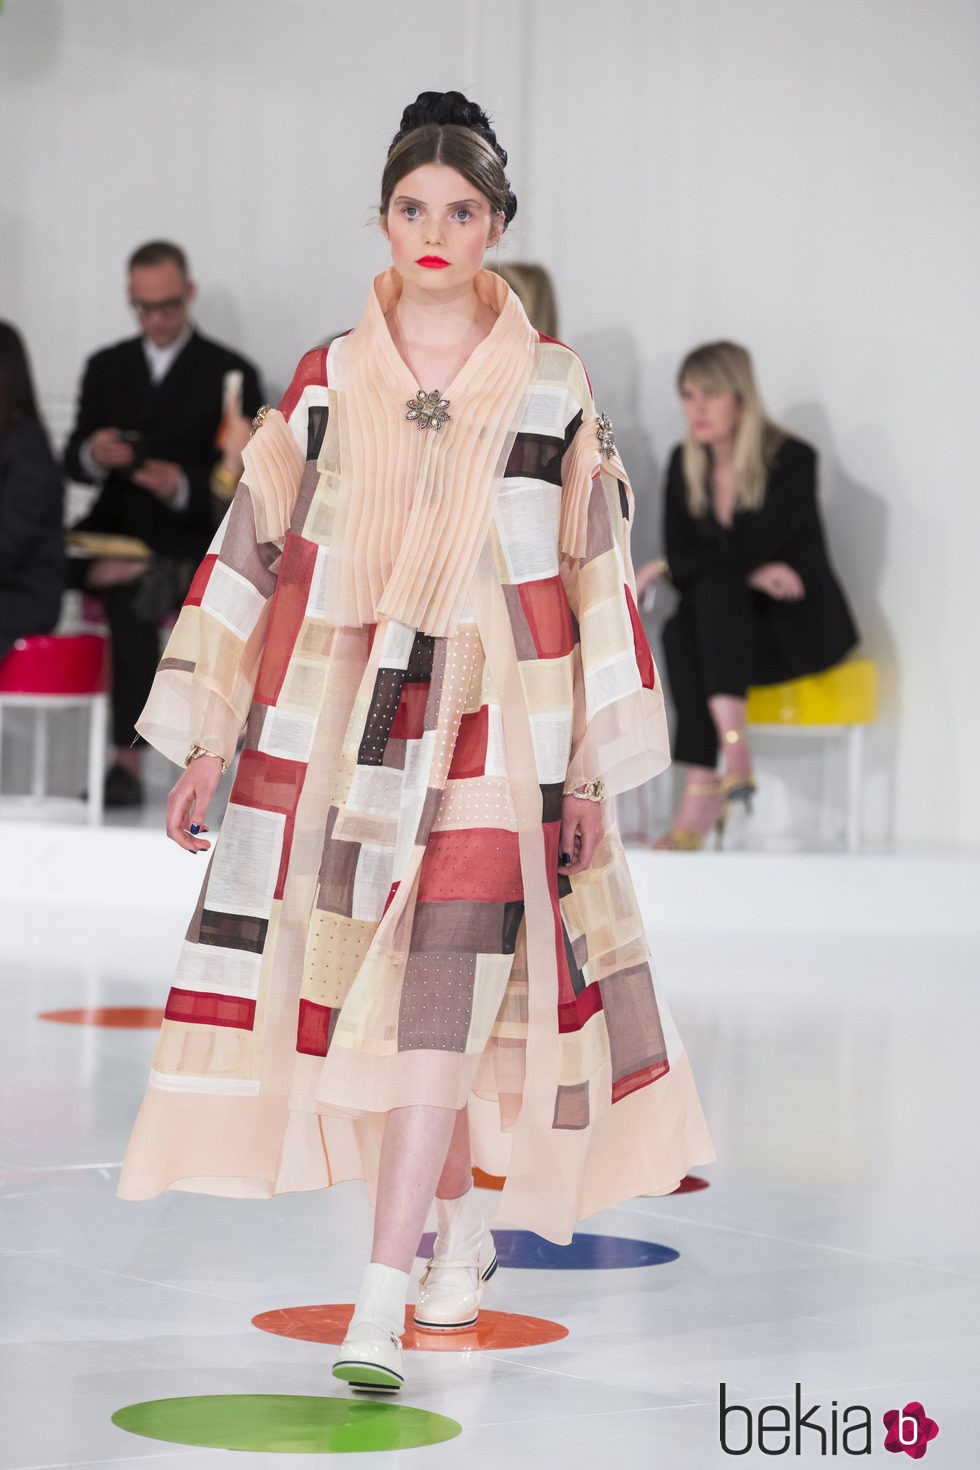 Vestido al estilo 'patchwork' de la colección Crucero 2015/2016 de Chanel